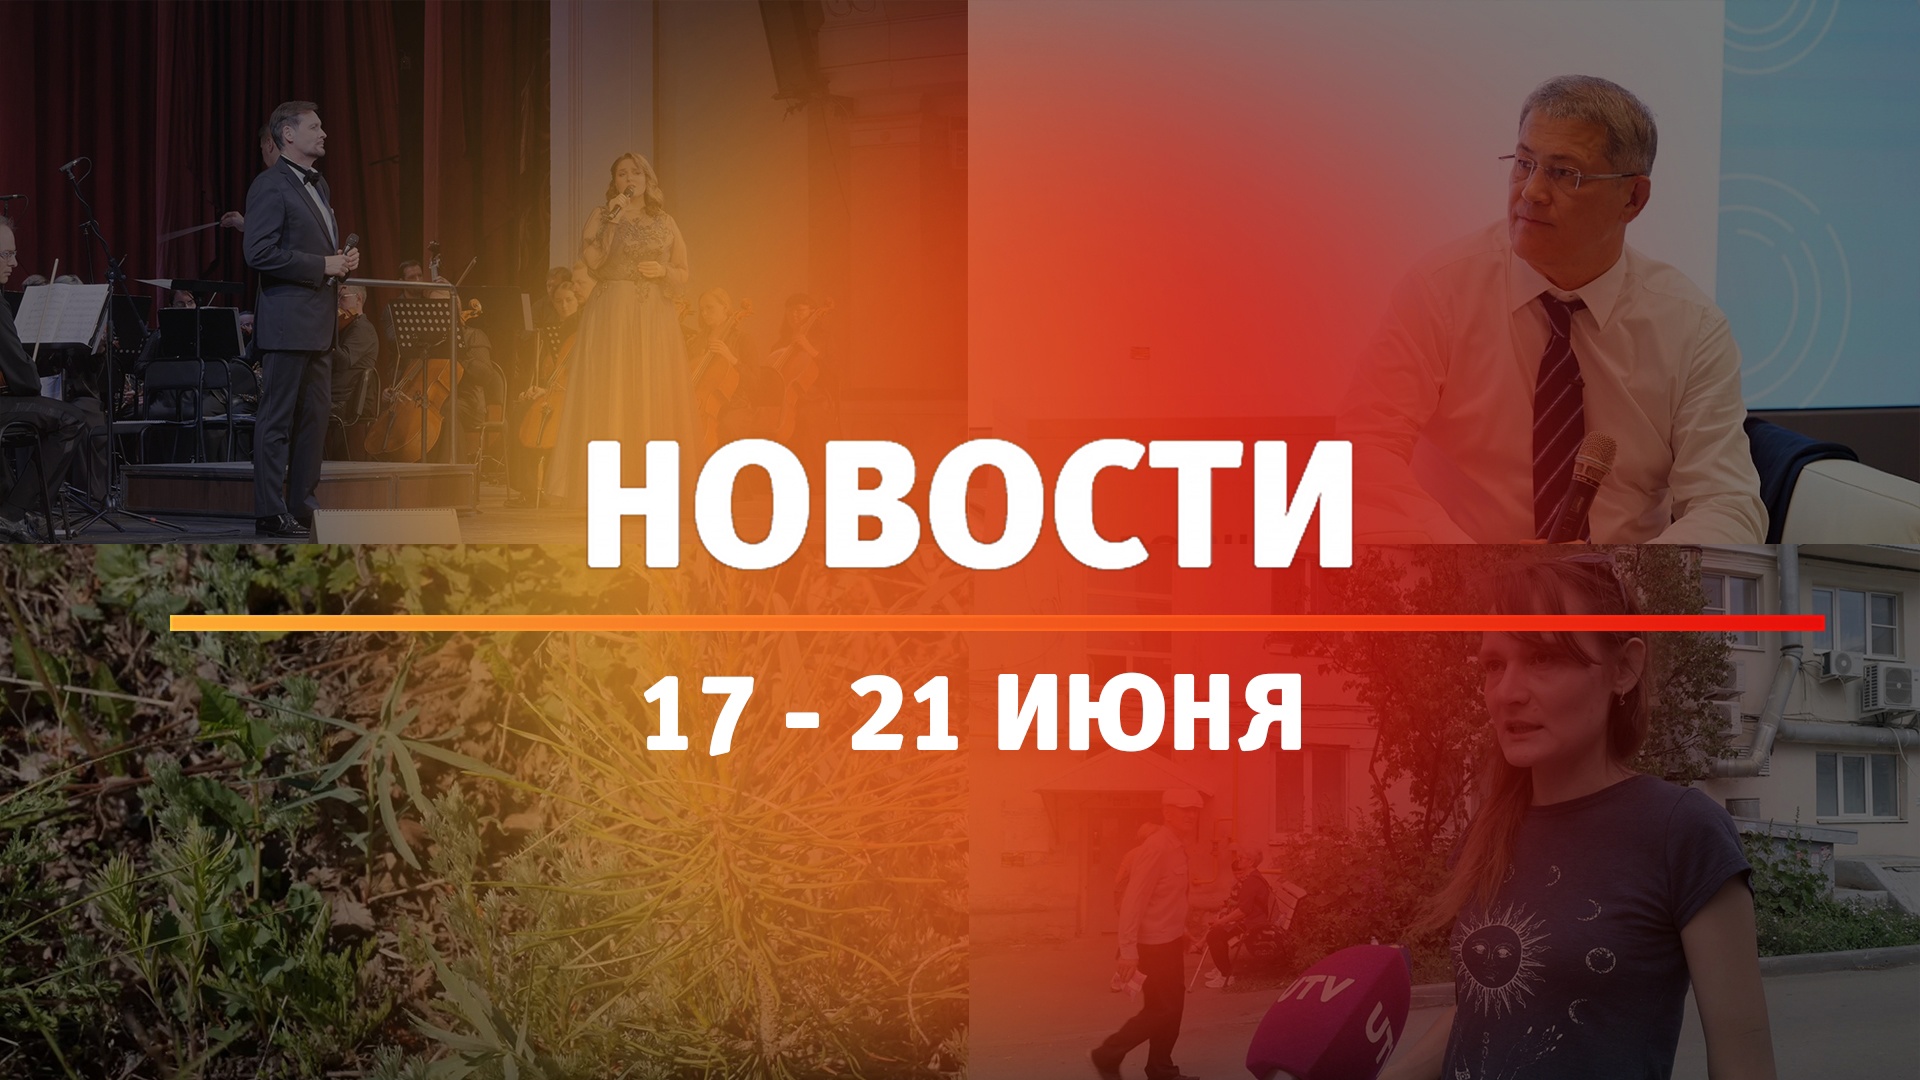 Итоги Новости Уфы и Башкирии | Главное за неделю с 17 по 21 июня